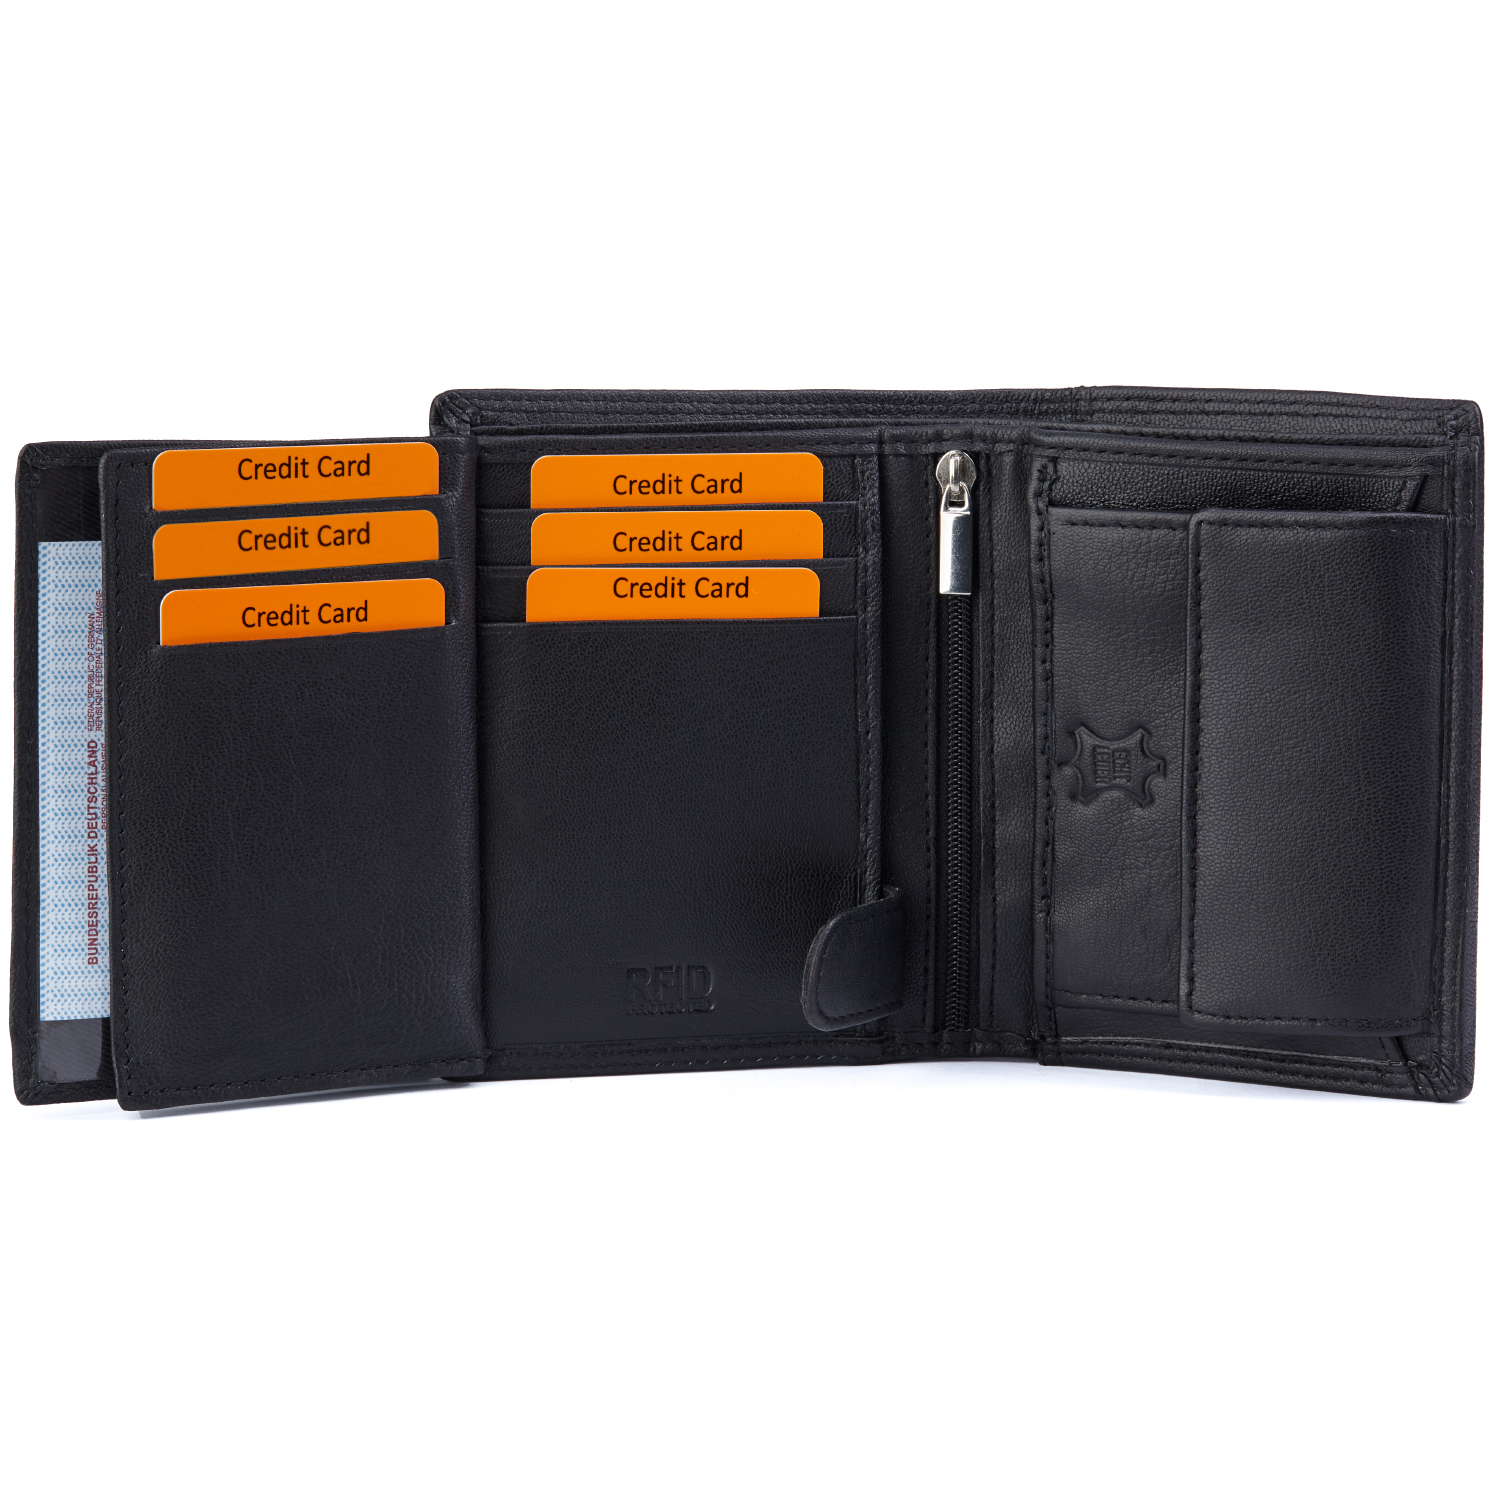 Herren Geldbörse mit RFID und NFC Schutz im Hochformat in schlichtem schwarz